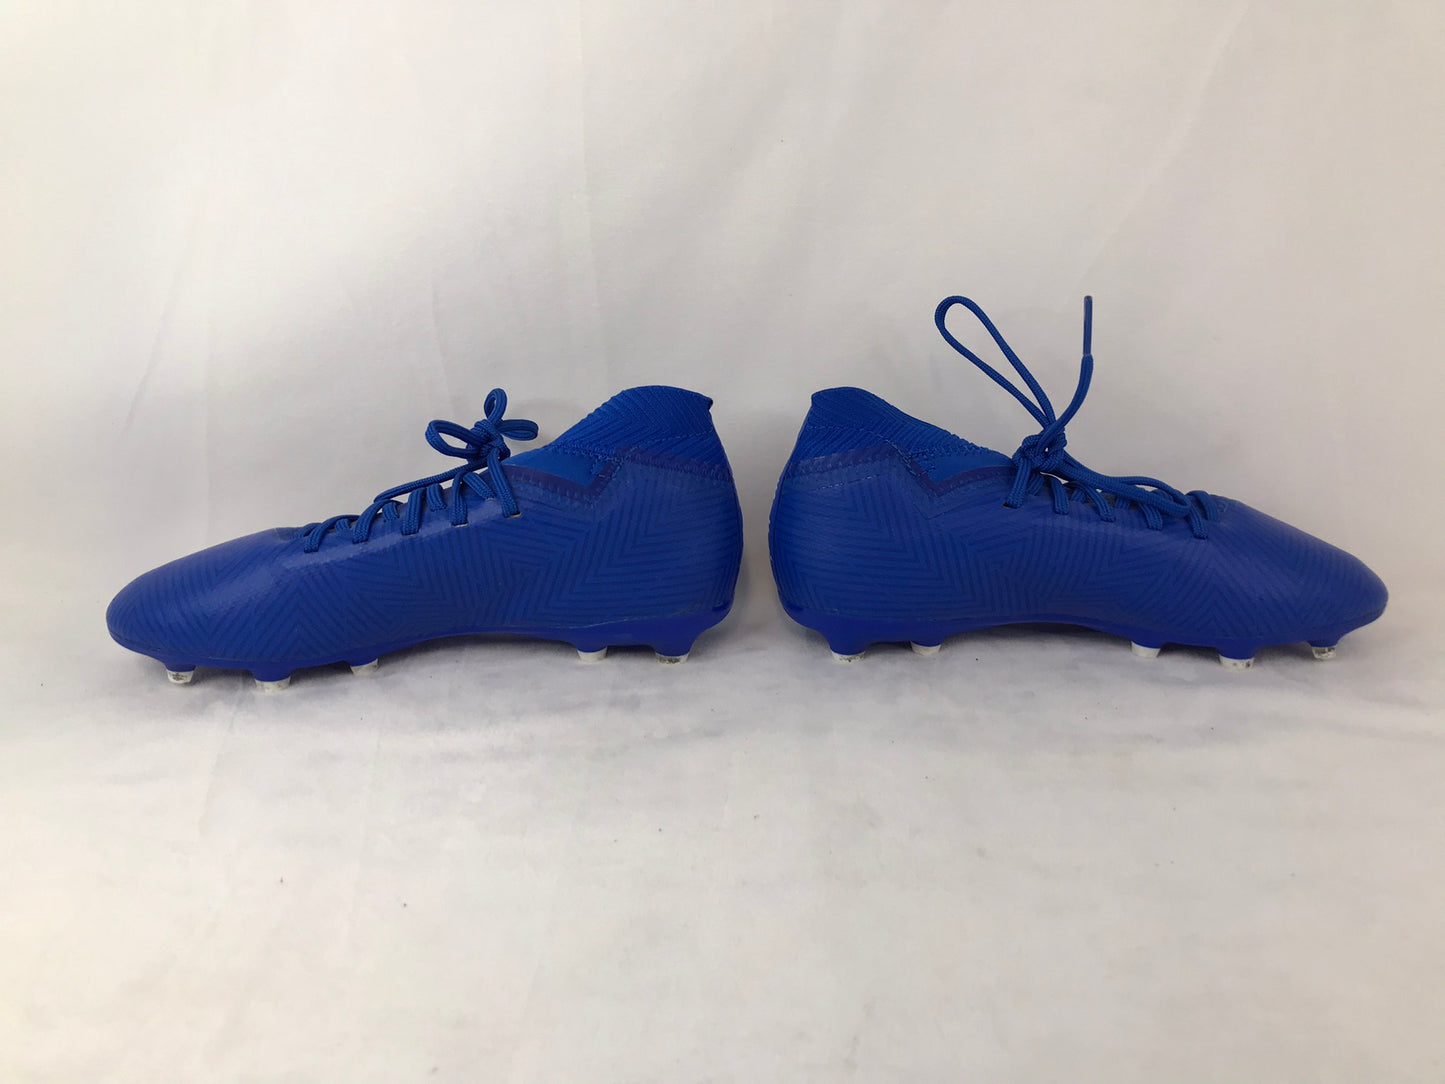 Soccer Shoes Cleats Child Size 3 Adidas Nemezziz Blue White Slipper Foot Excellent